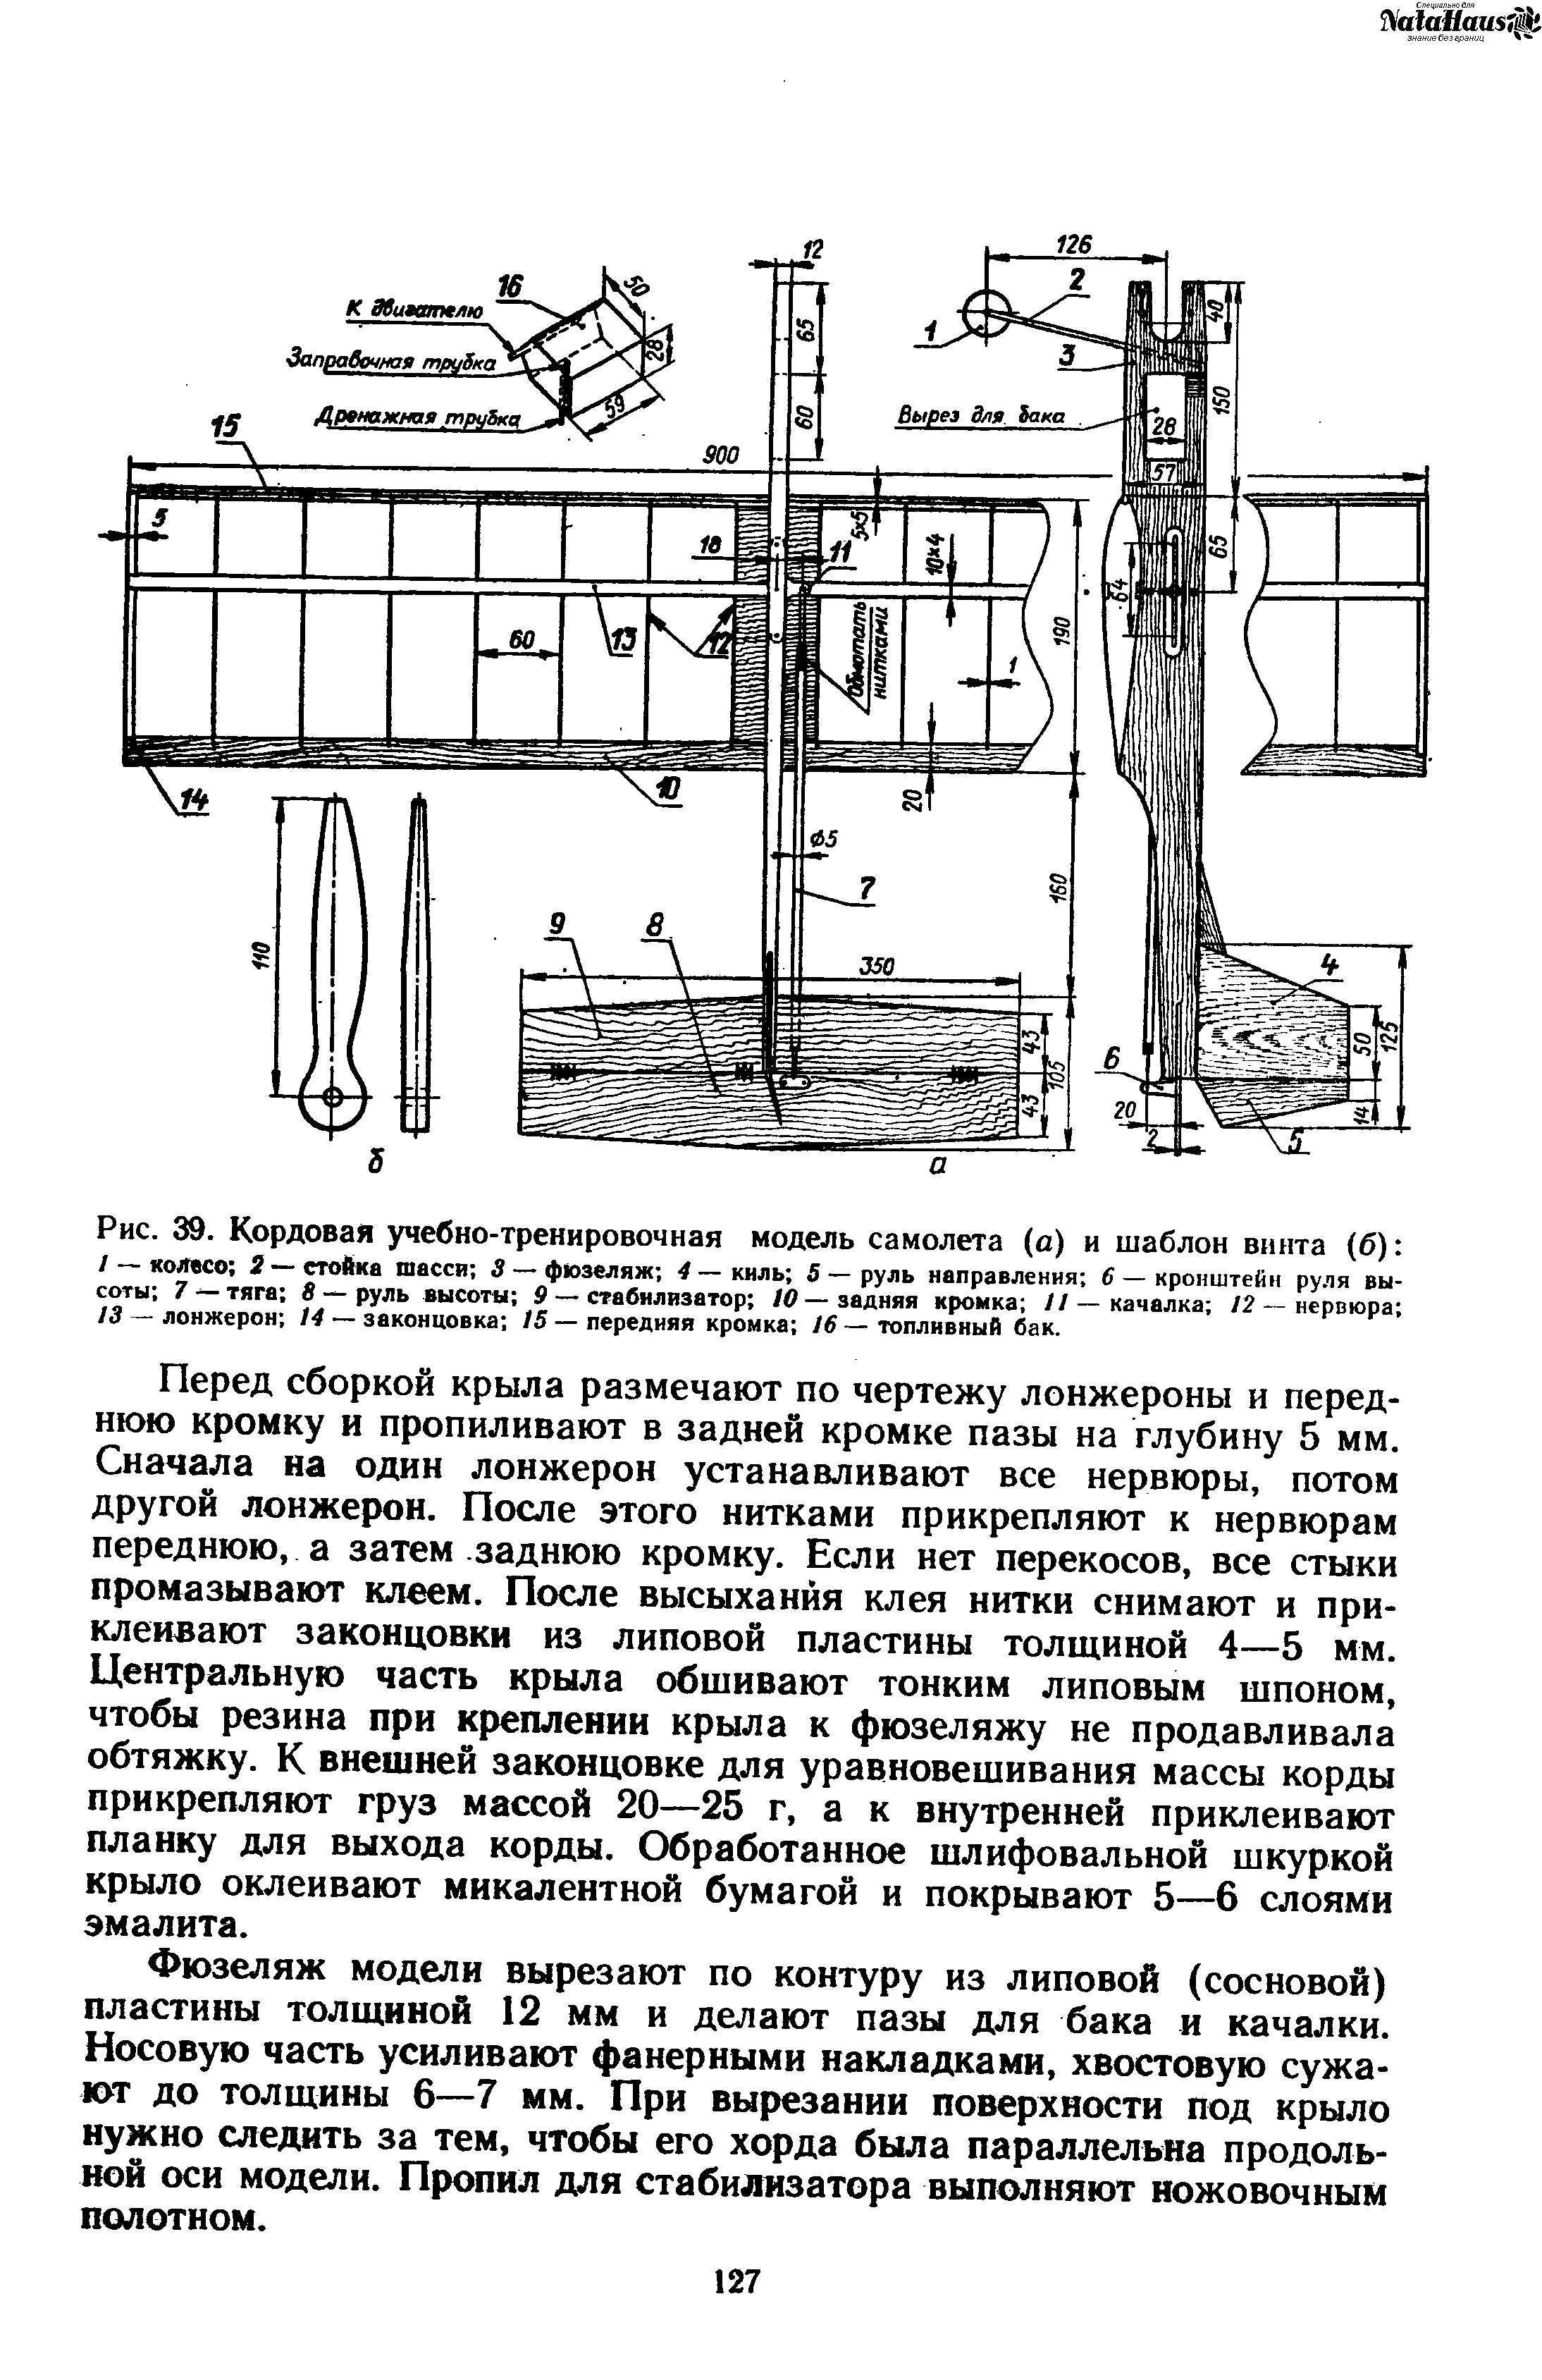 Рис. 39. Кордовая учебно-тренировочная модель самолета (а) и шаблон винта (б) 
